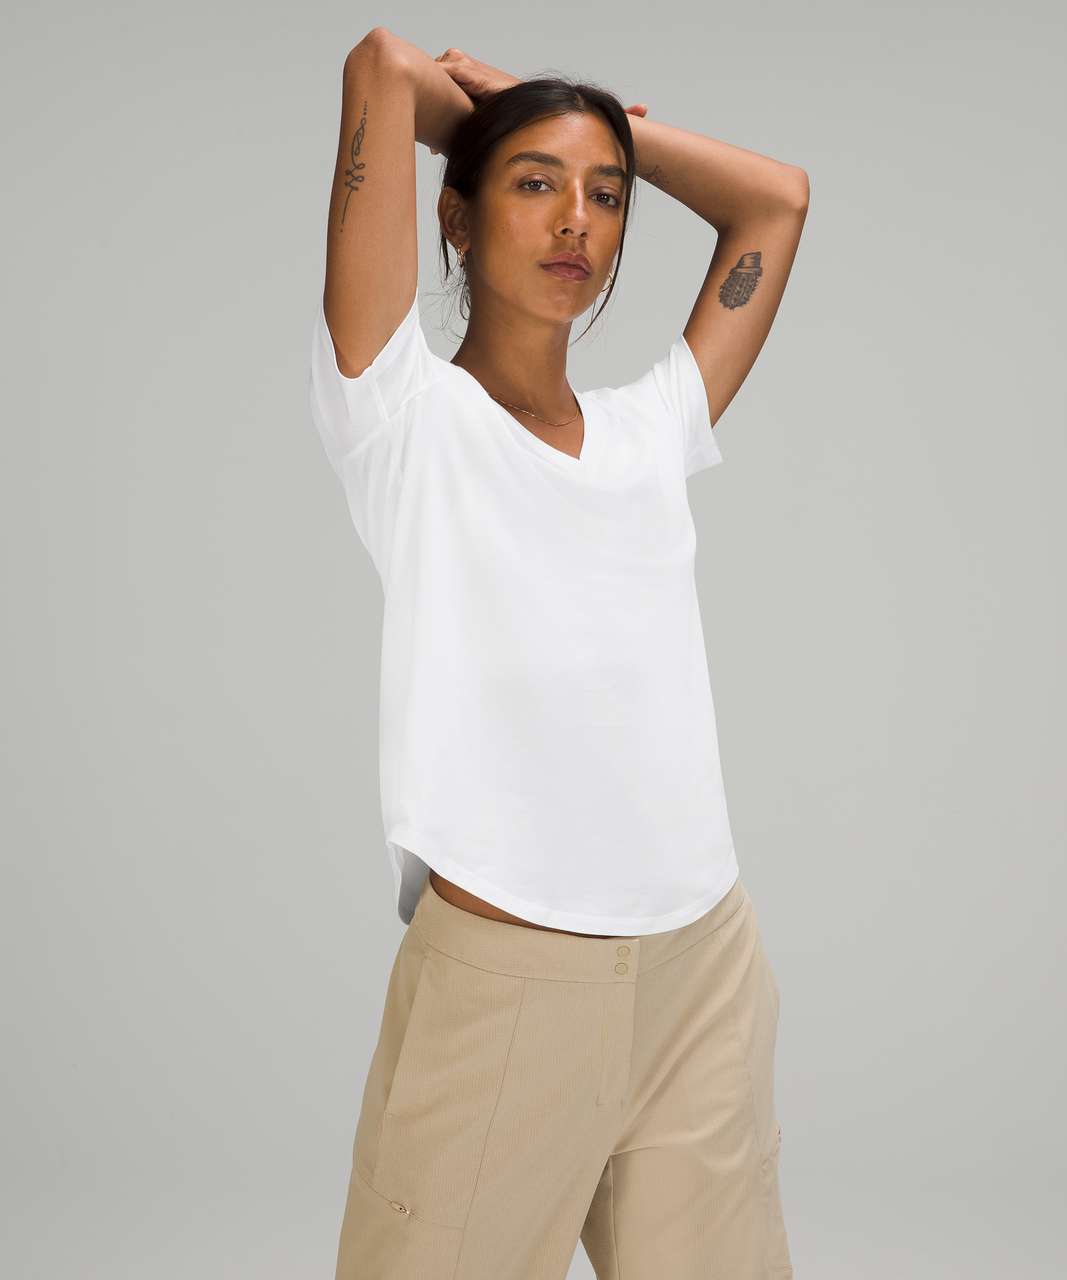 Lululemon Love Tee Short Sleeve V-Neck T-Shirt - White (First Release)